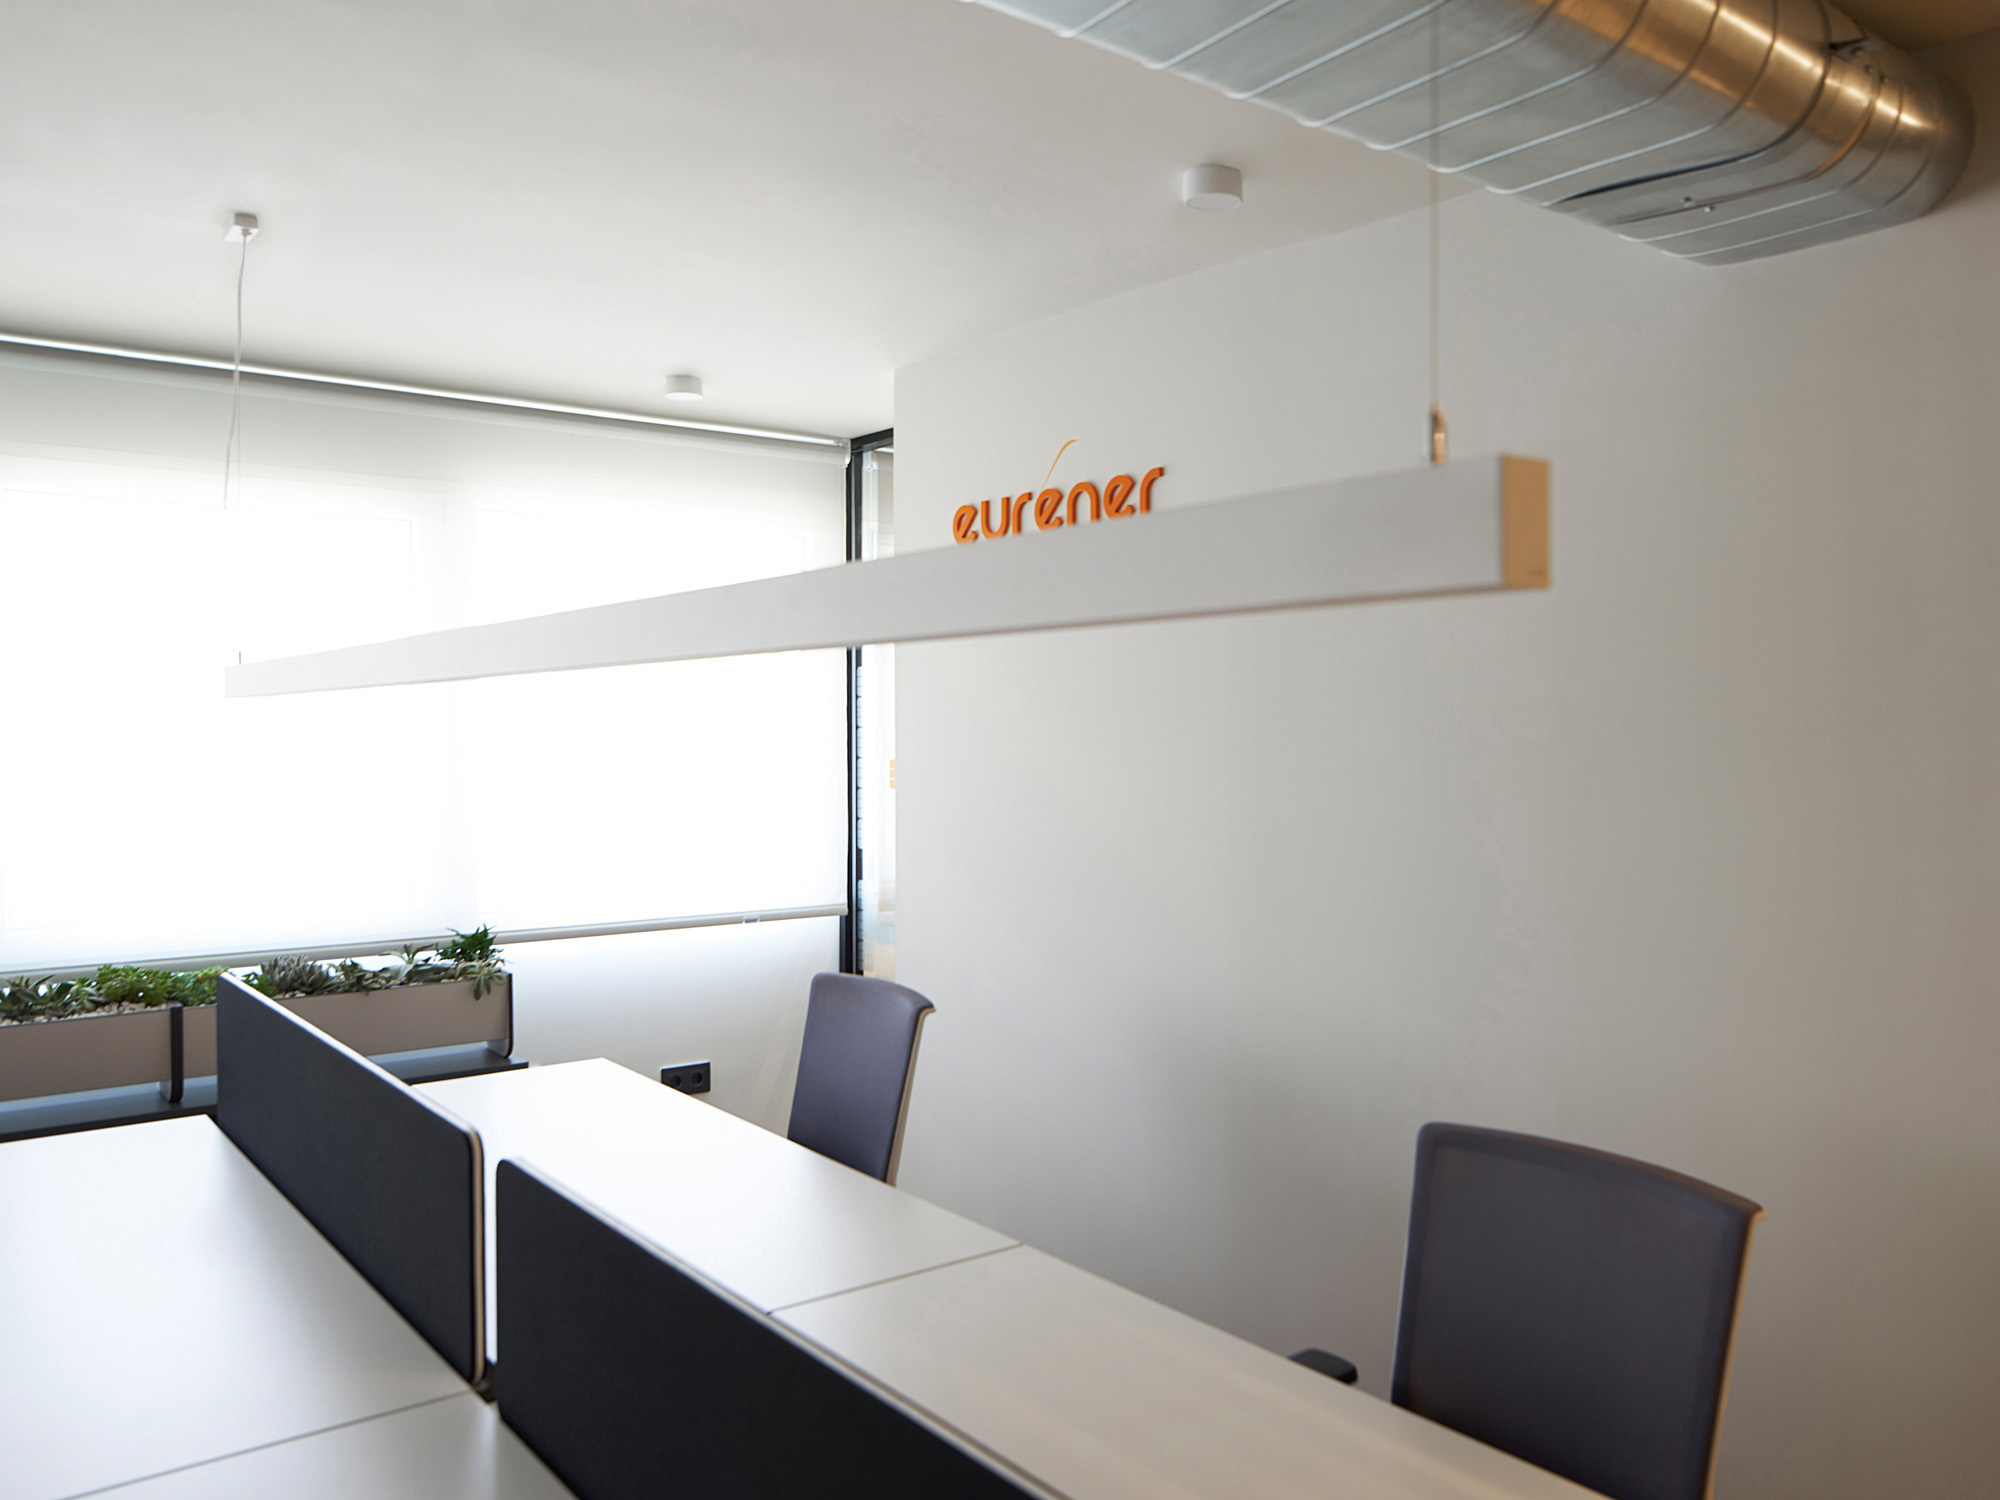 Proyecto de diseño para las oficinas Eurener en Valencia